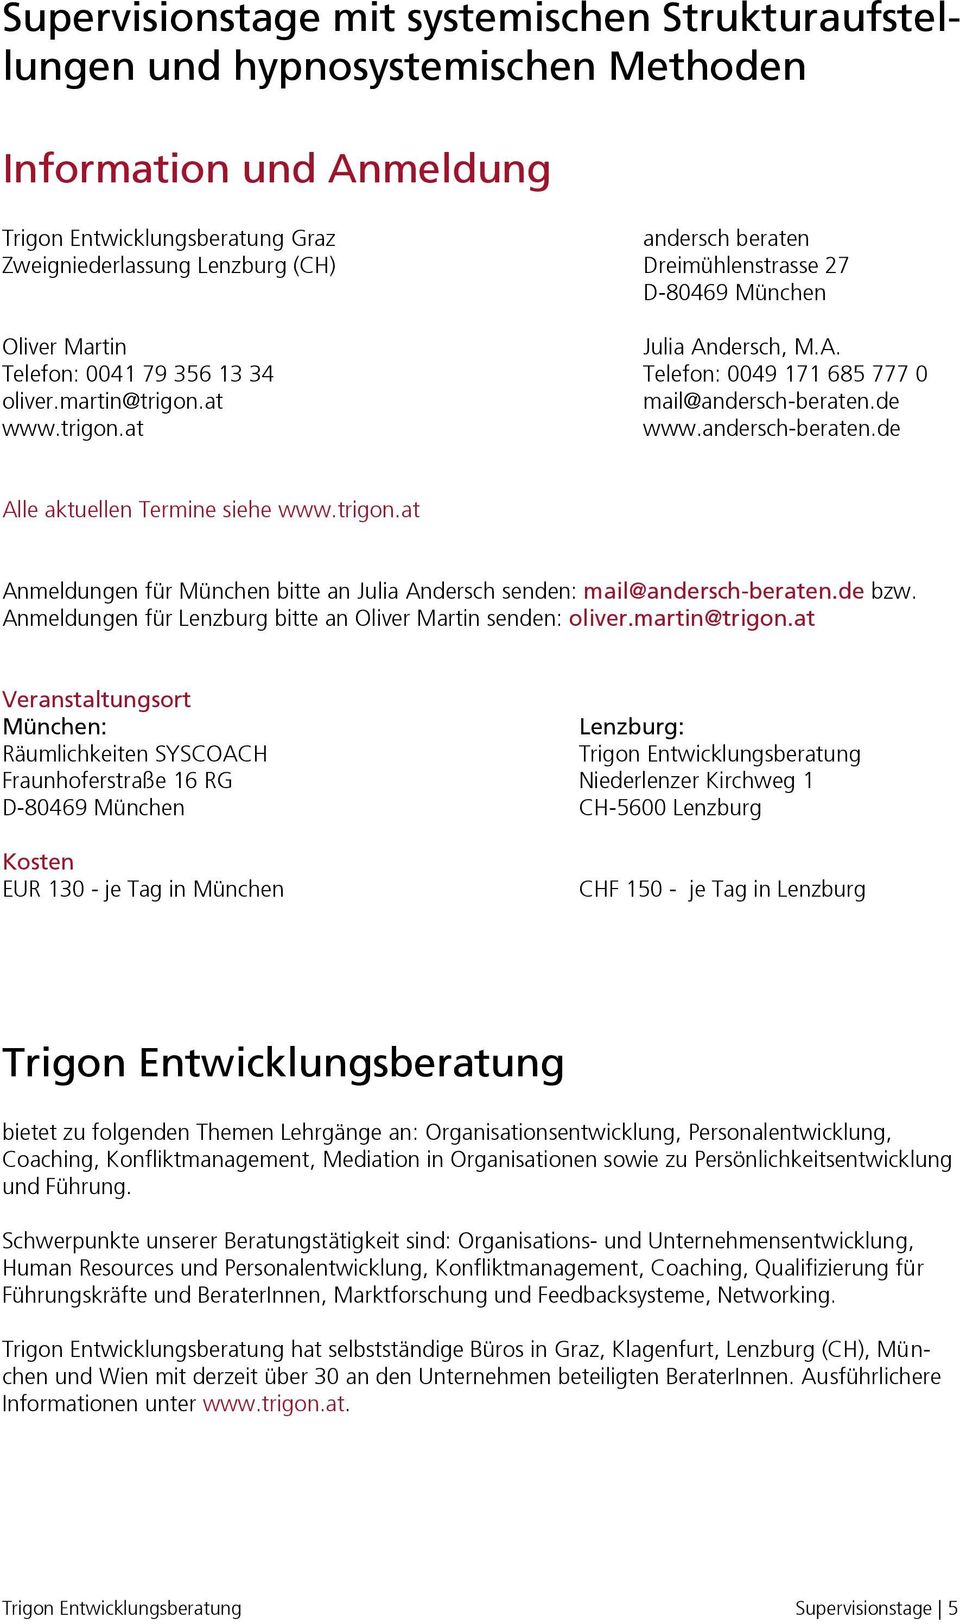 andersch-beraten.de Alle aktuellen Termine siehe www.trigon.at Anmeldungen für München bitte an Julia Andersch senden: mail@andersch-beraten.de bzw.